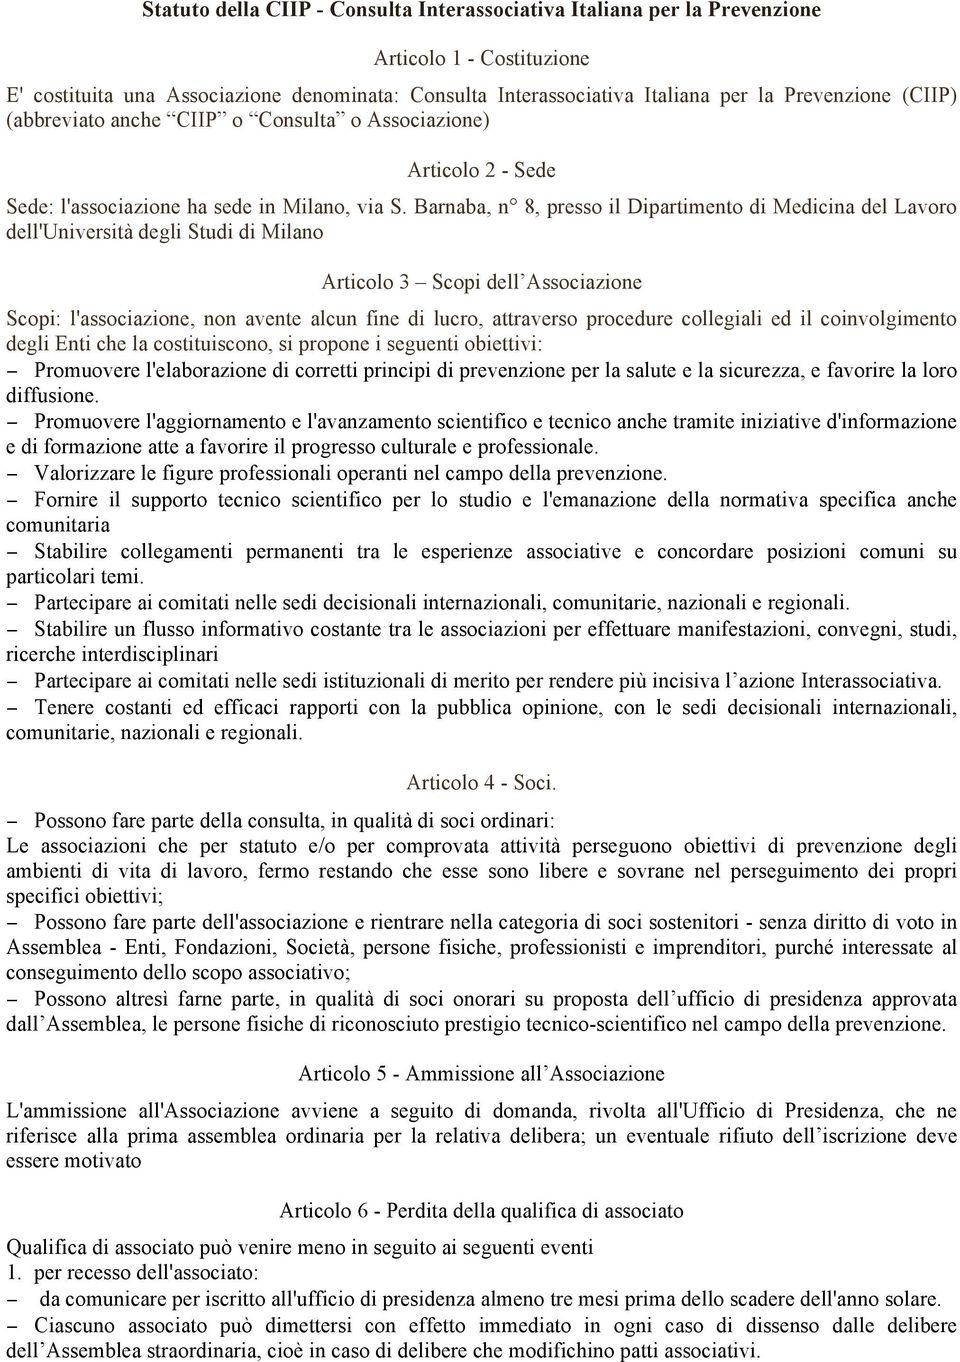 Barnaba, n 8, presso il Dipartimento di Medicina del Lavoro dell'università degli Studi di Milano Articolo 3 Scopi dell Associazione Scopi: l'associazione, non avente alcun fine di lucro, attraverso